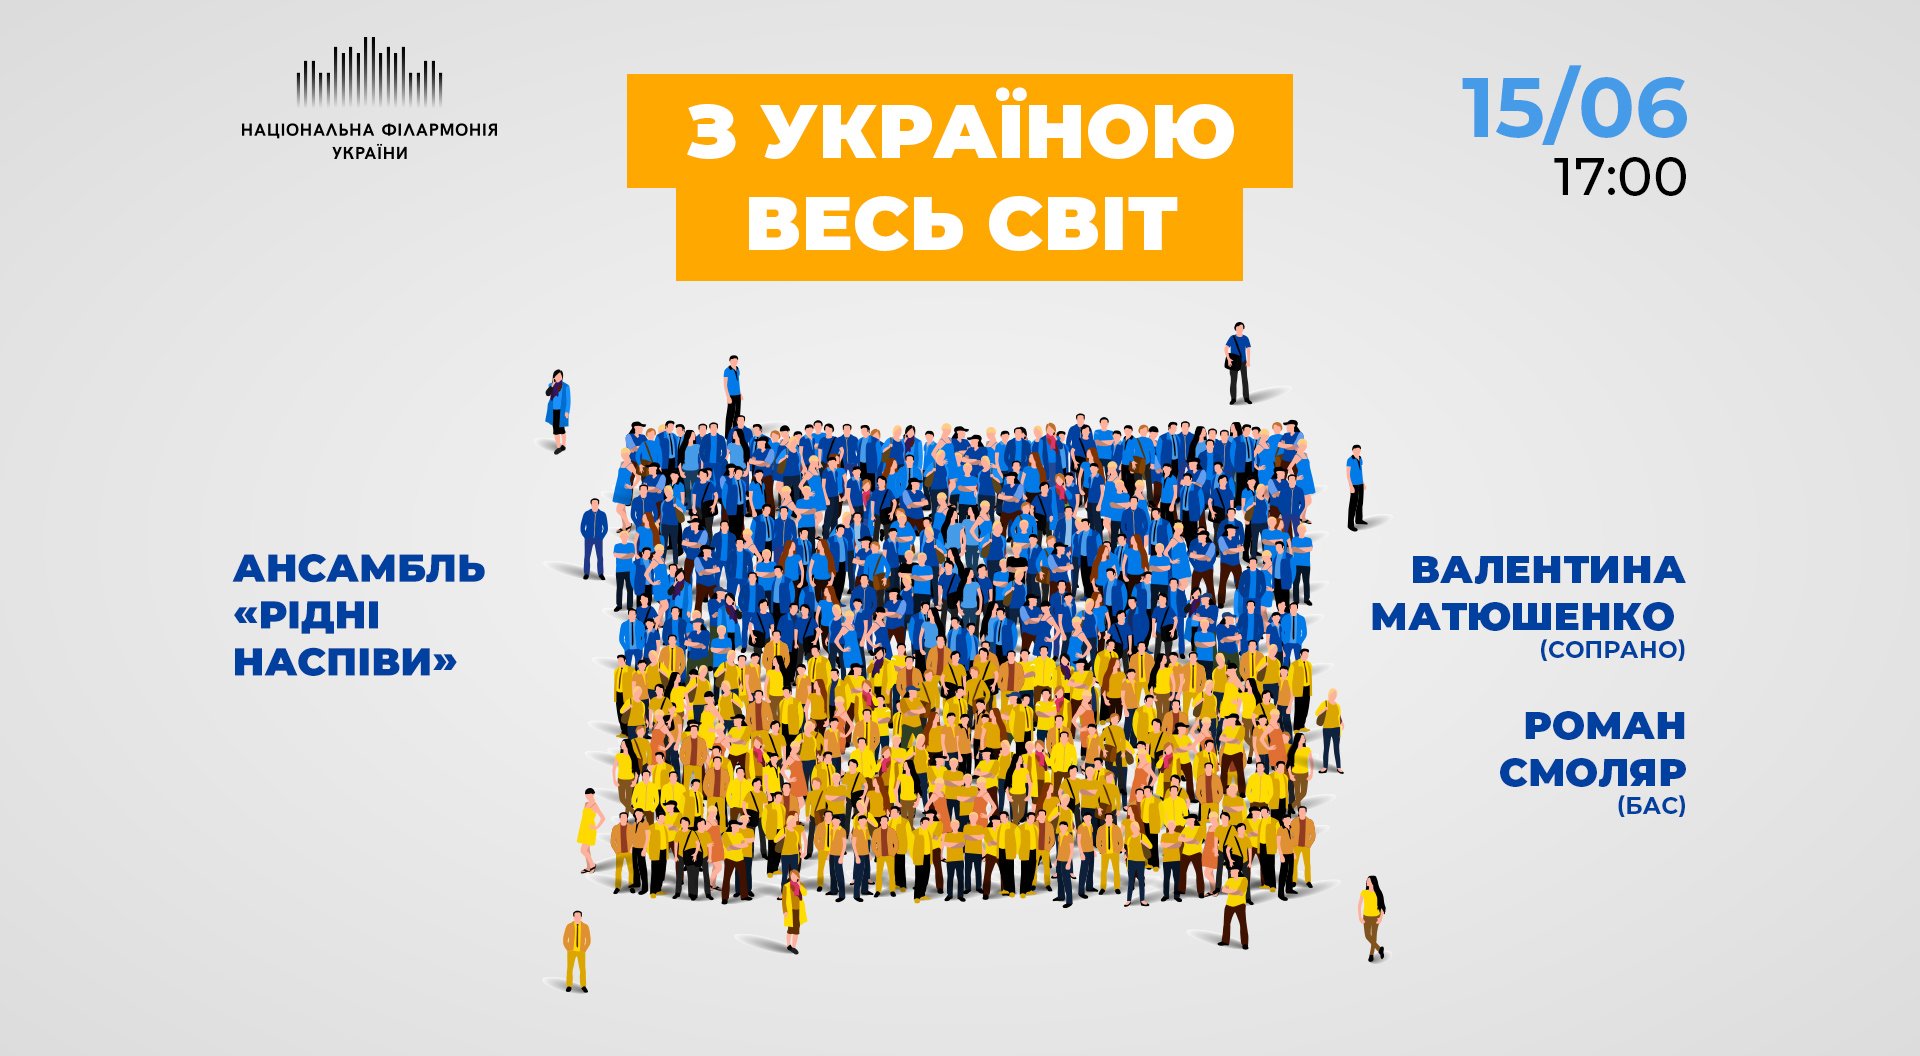 Концерт "С Украиной весь мир"